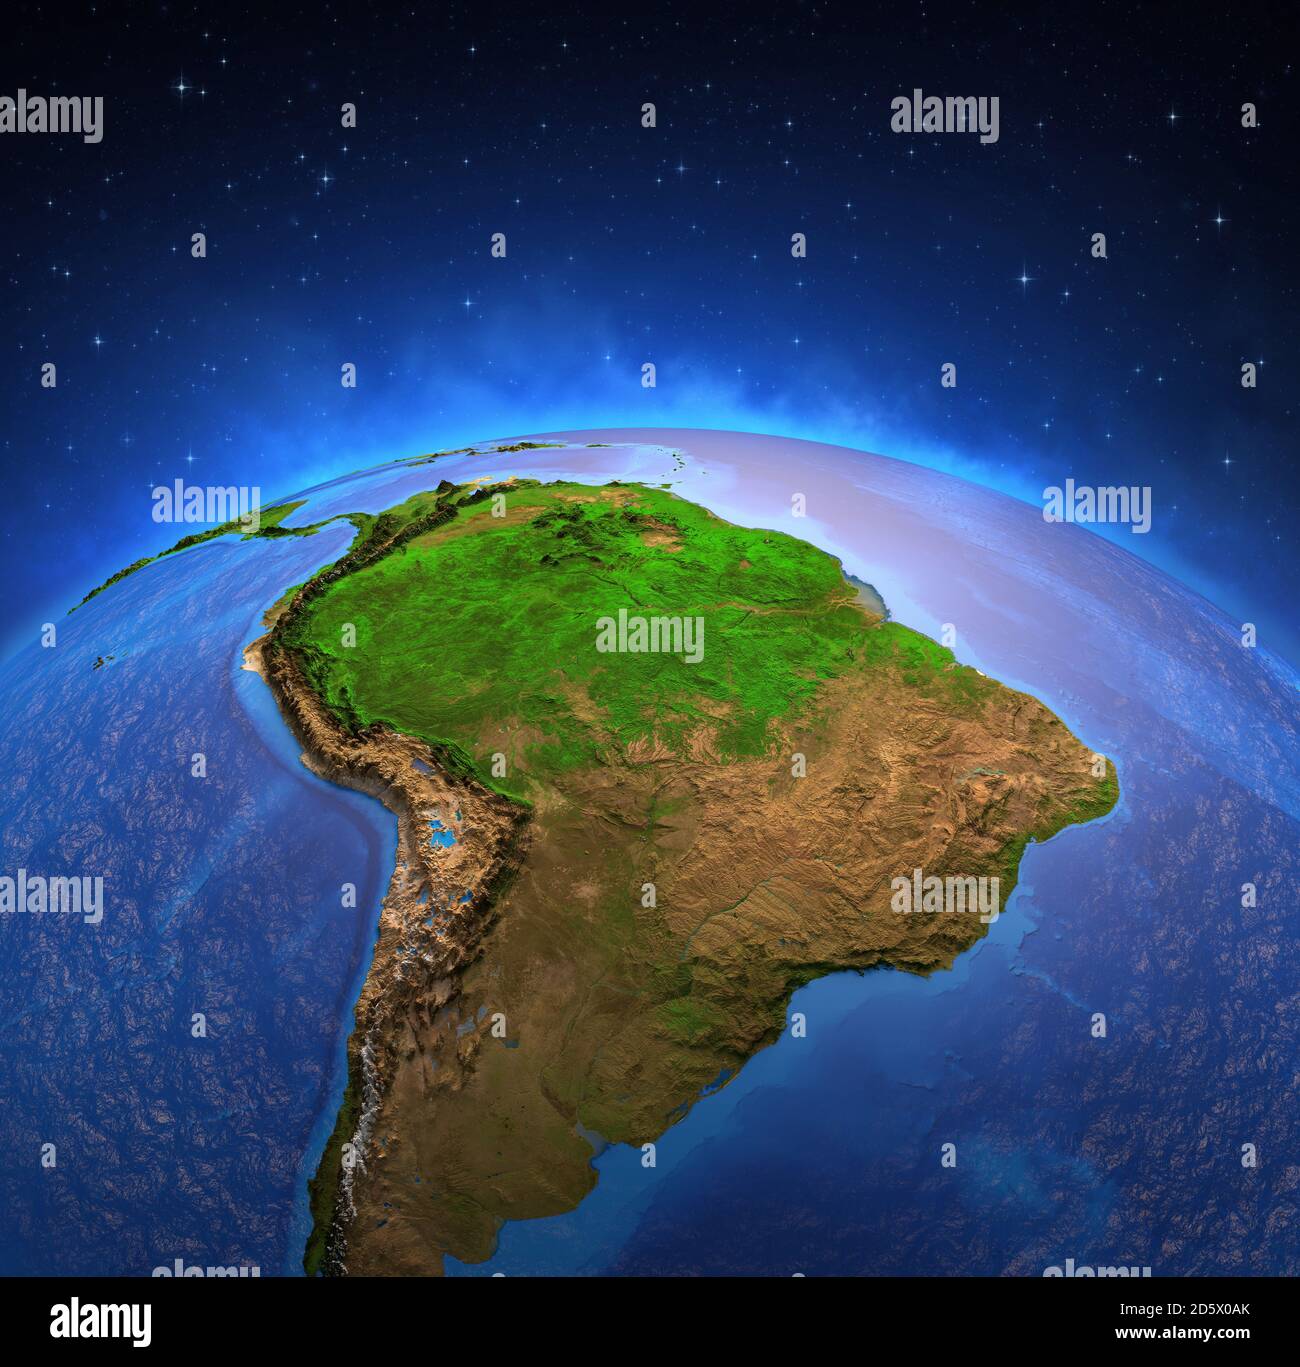 Surface De La Planete Terre Vue A Partir D Un Satellite Axe Sur L Amerique Du Sud La Cordillere Des Andes Et La Foret Amazonienne Carte Physique De L Amazonie 3d Il Photo Stock